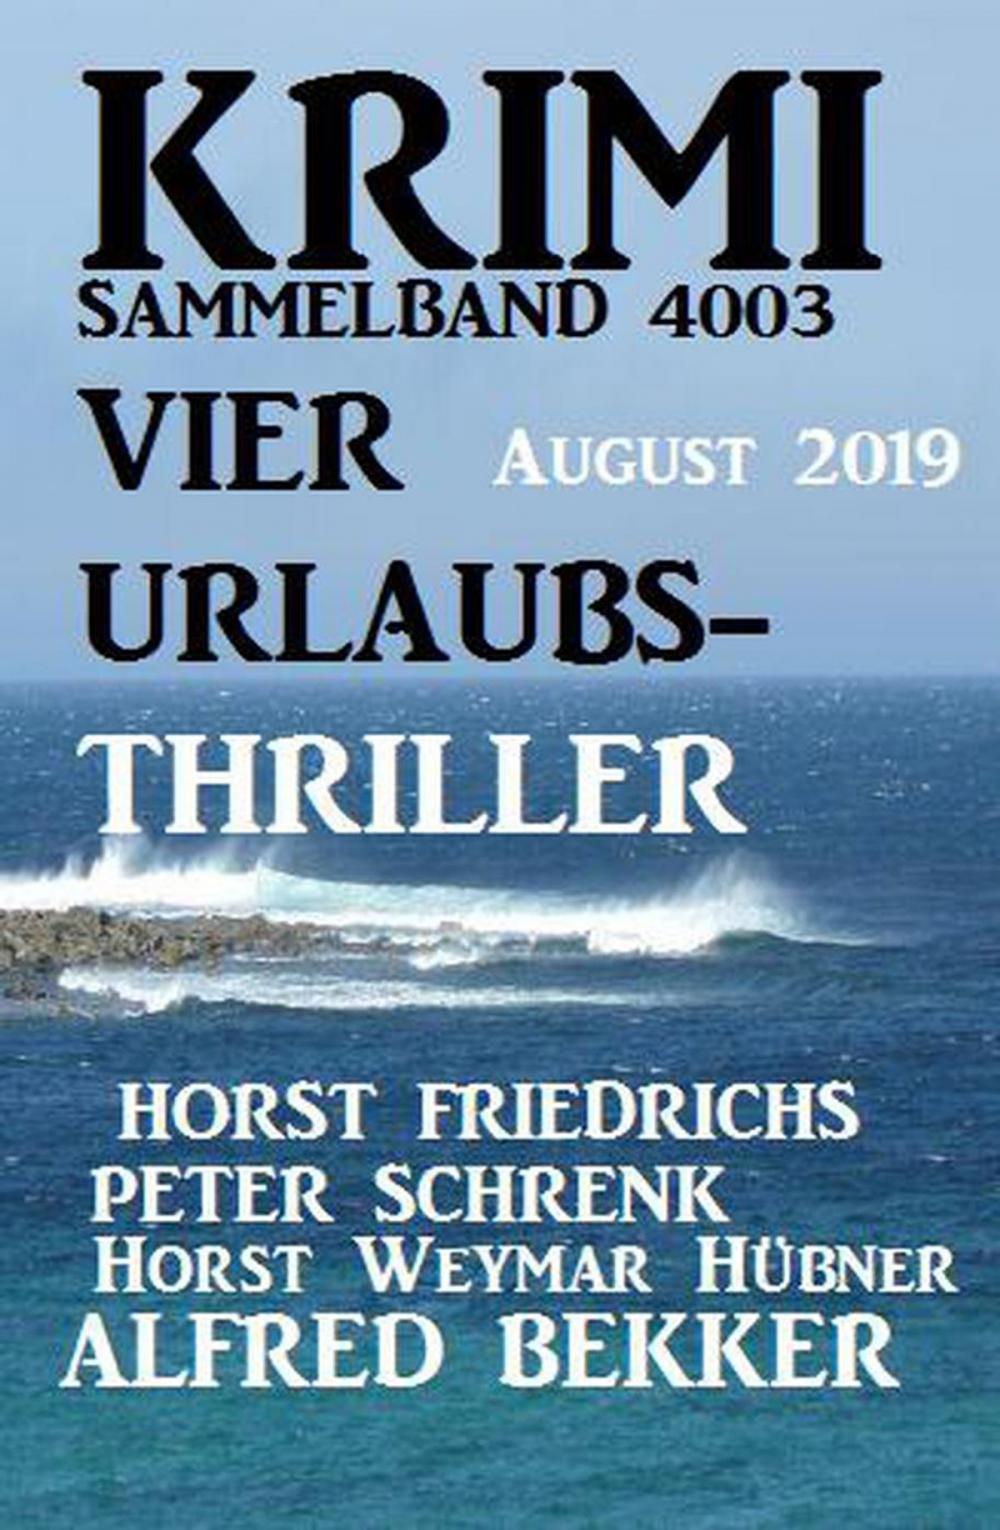 Big bigCover of Krimi Sammelband 4003 Vier Urlaubs-Thriller August 2019